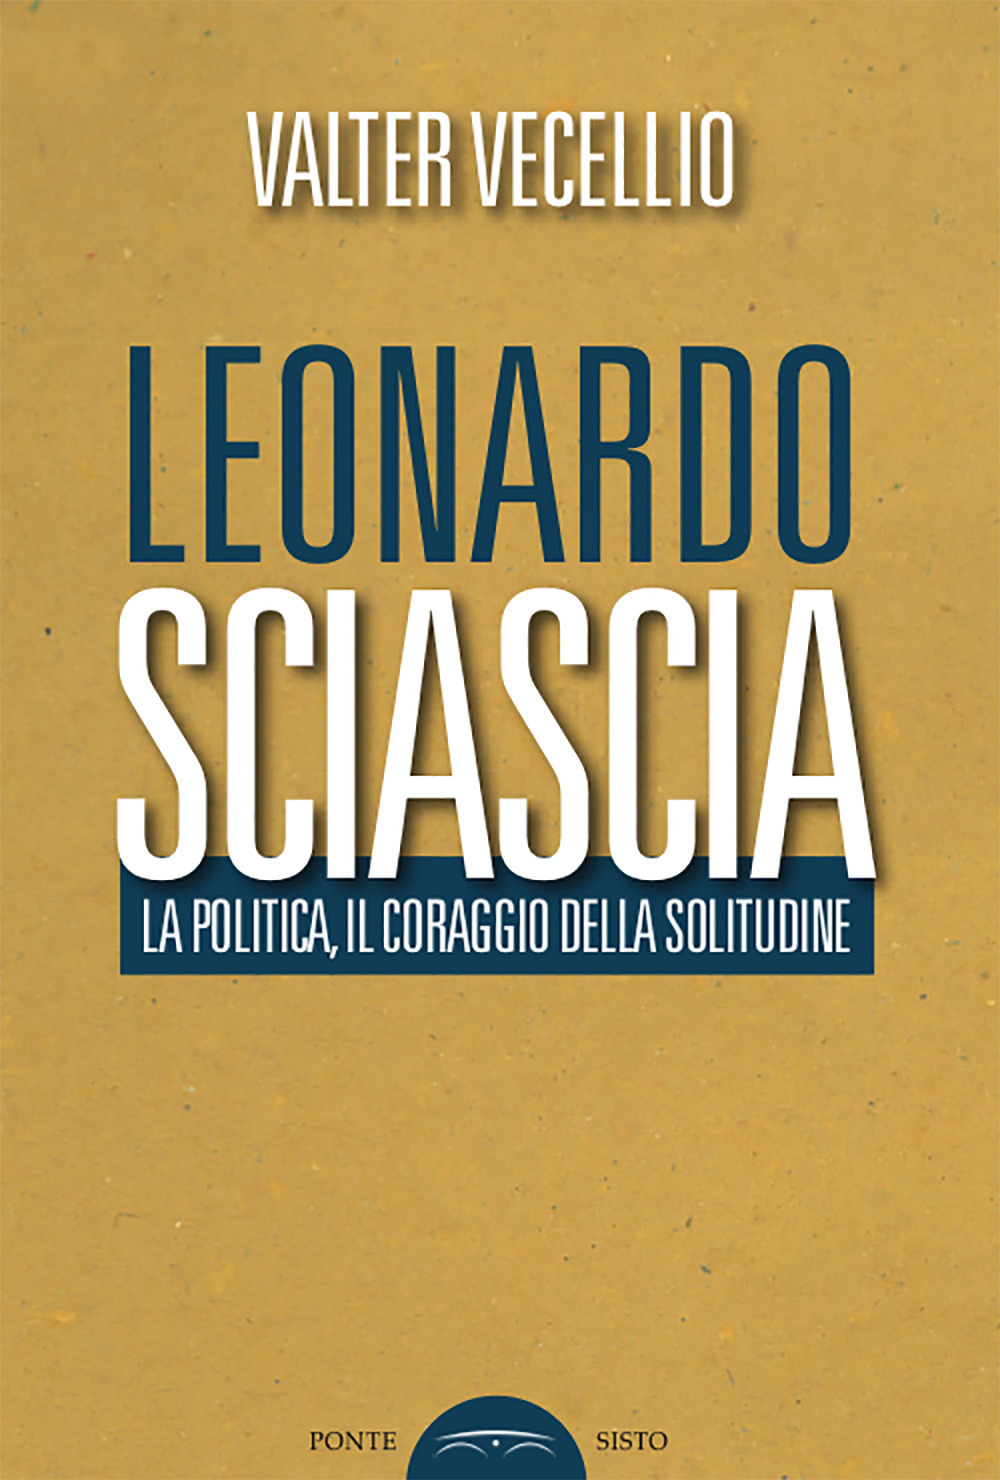 Leonardo Sciascia. La politica, il coraggio della solitudine